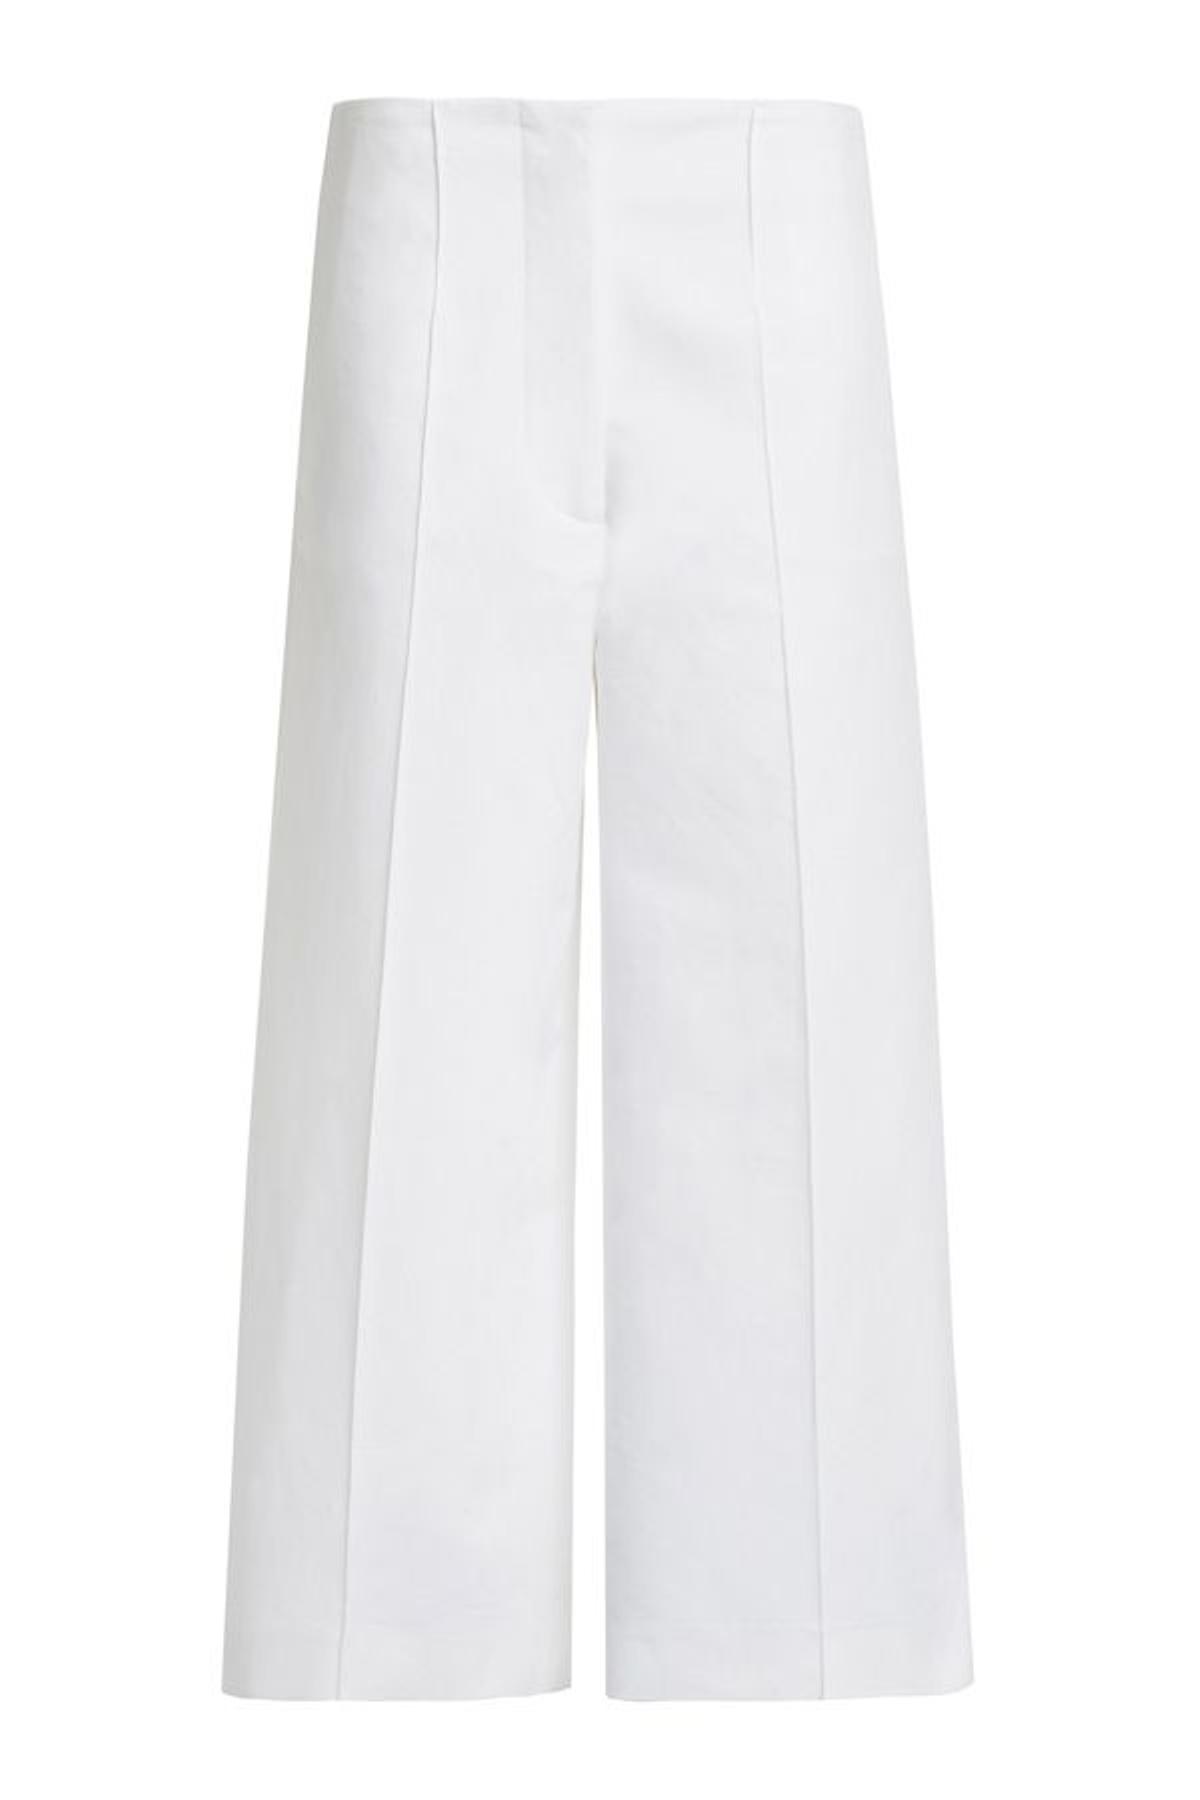 Las rebajas de Bimba y Lola, los 15 imprescindibles:  pantalón culotte blanco